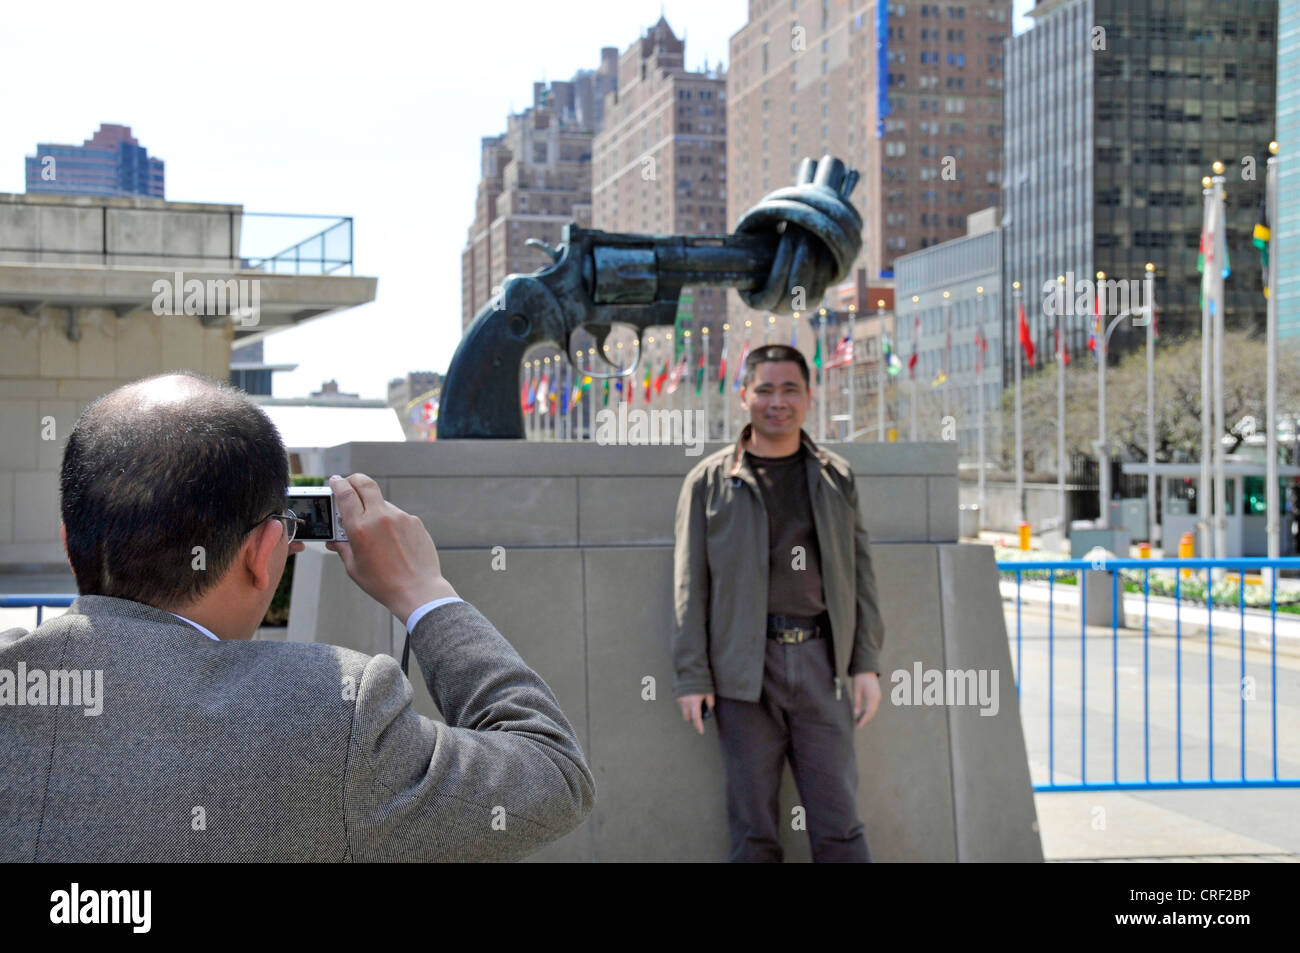 Los turistas tomando fotos de recuerdo en la parte delantera de la pistola anudadas, la no-violencia la escultura de Reuterswaerd delante de la Sede de la ONU, Estados Unidos, Estados Unidos, Manhattan, Ciudad de Nueva York Foto de stock